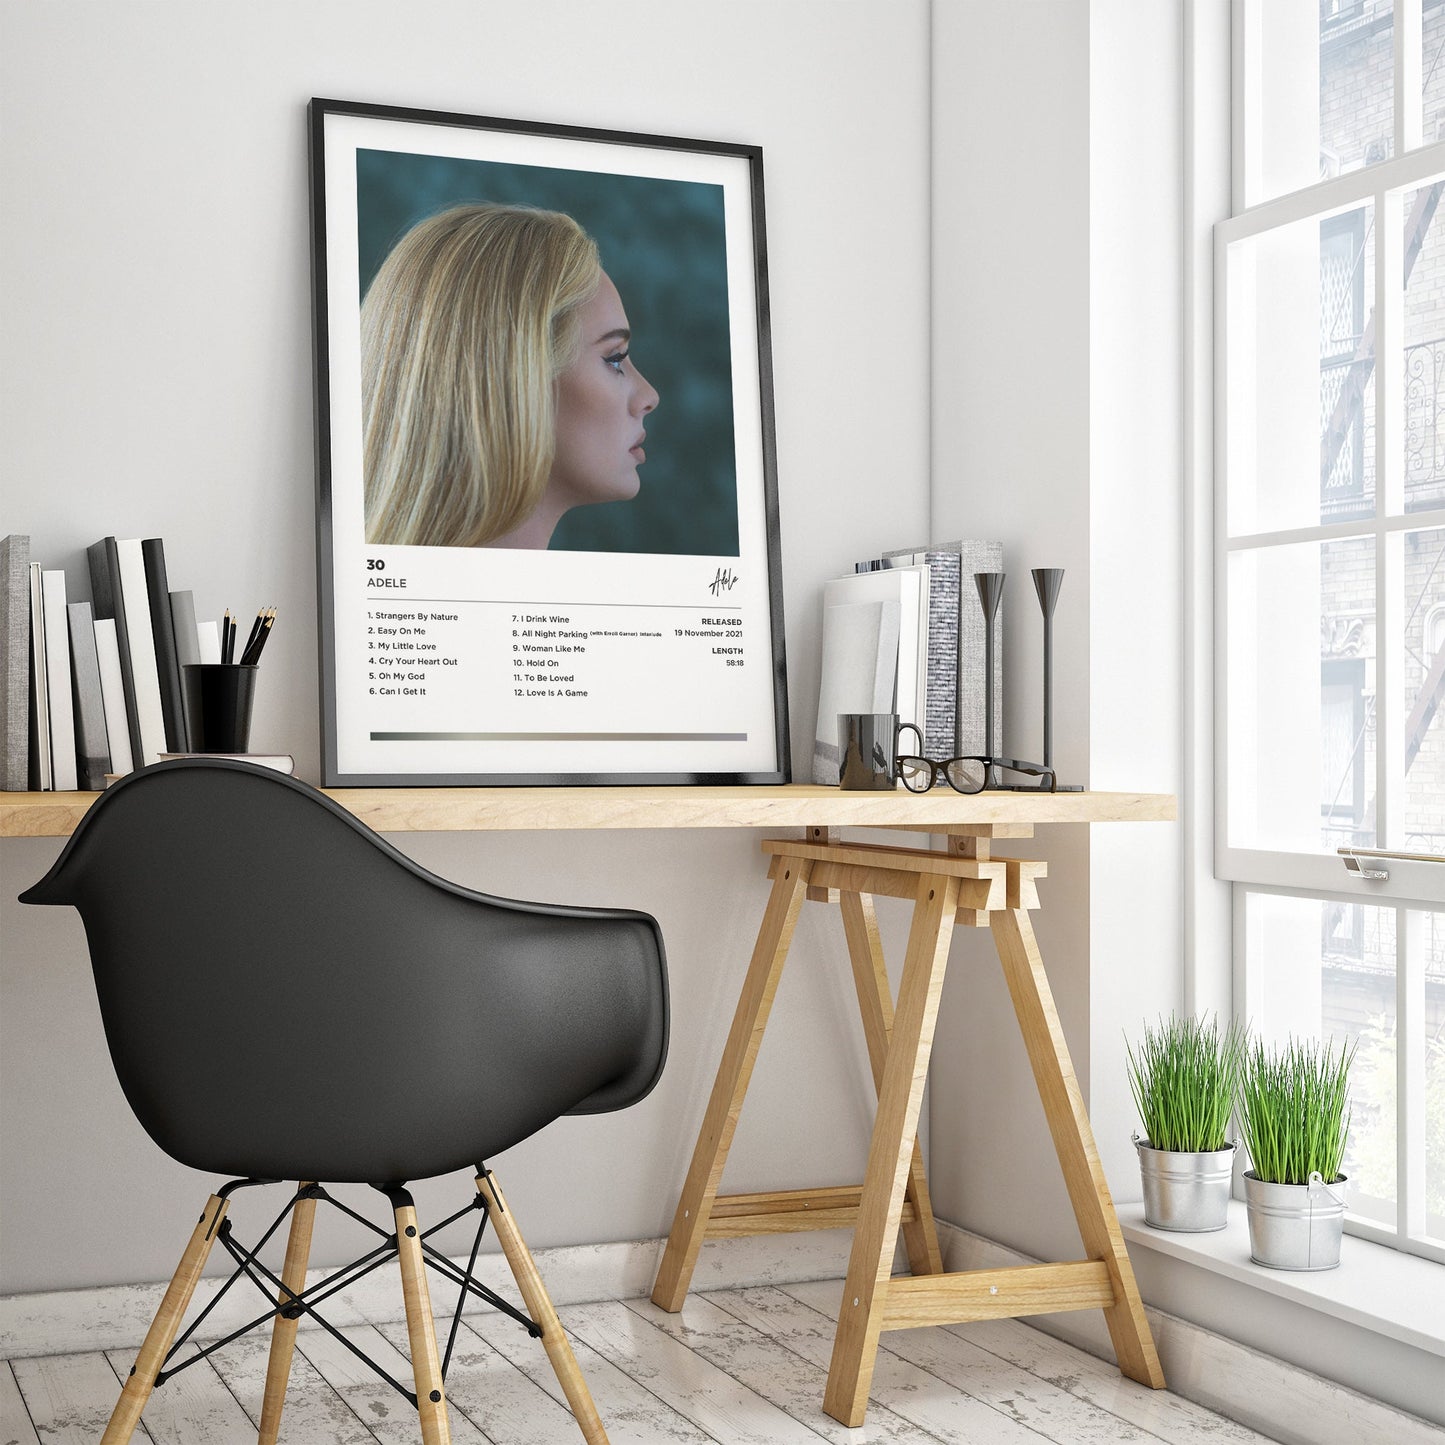 Adele - 30 Framed Poster Print | Polaroid Style | Album Cover Artwork